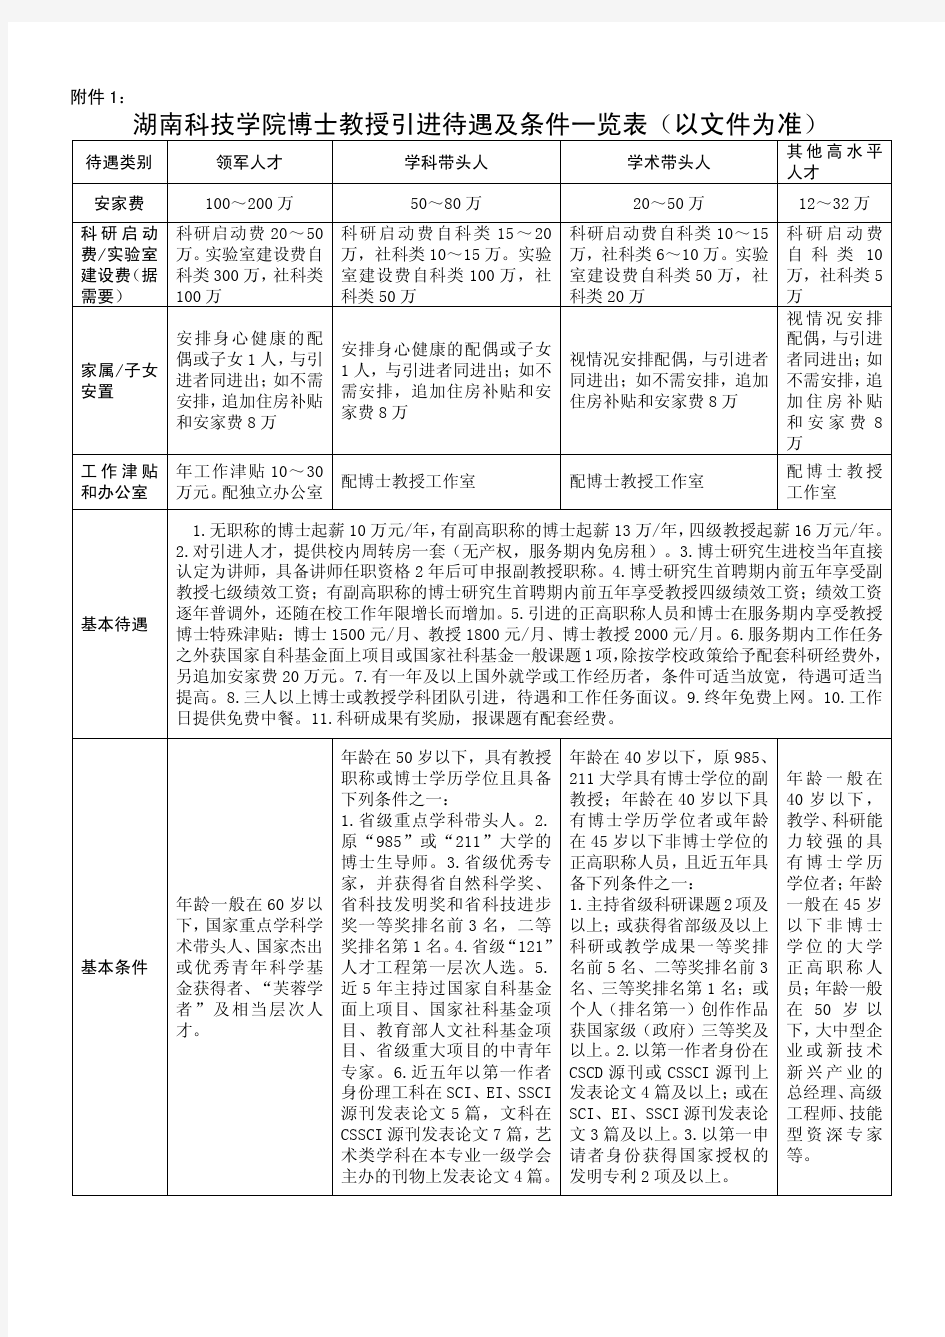 湖南科技学院博士教授引进待遇及条件一览表(以文件为准)